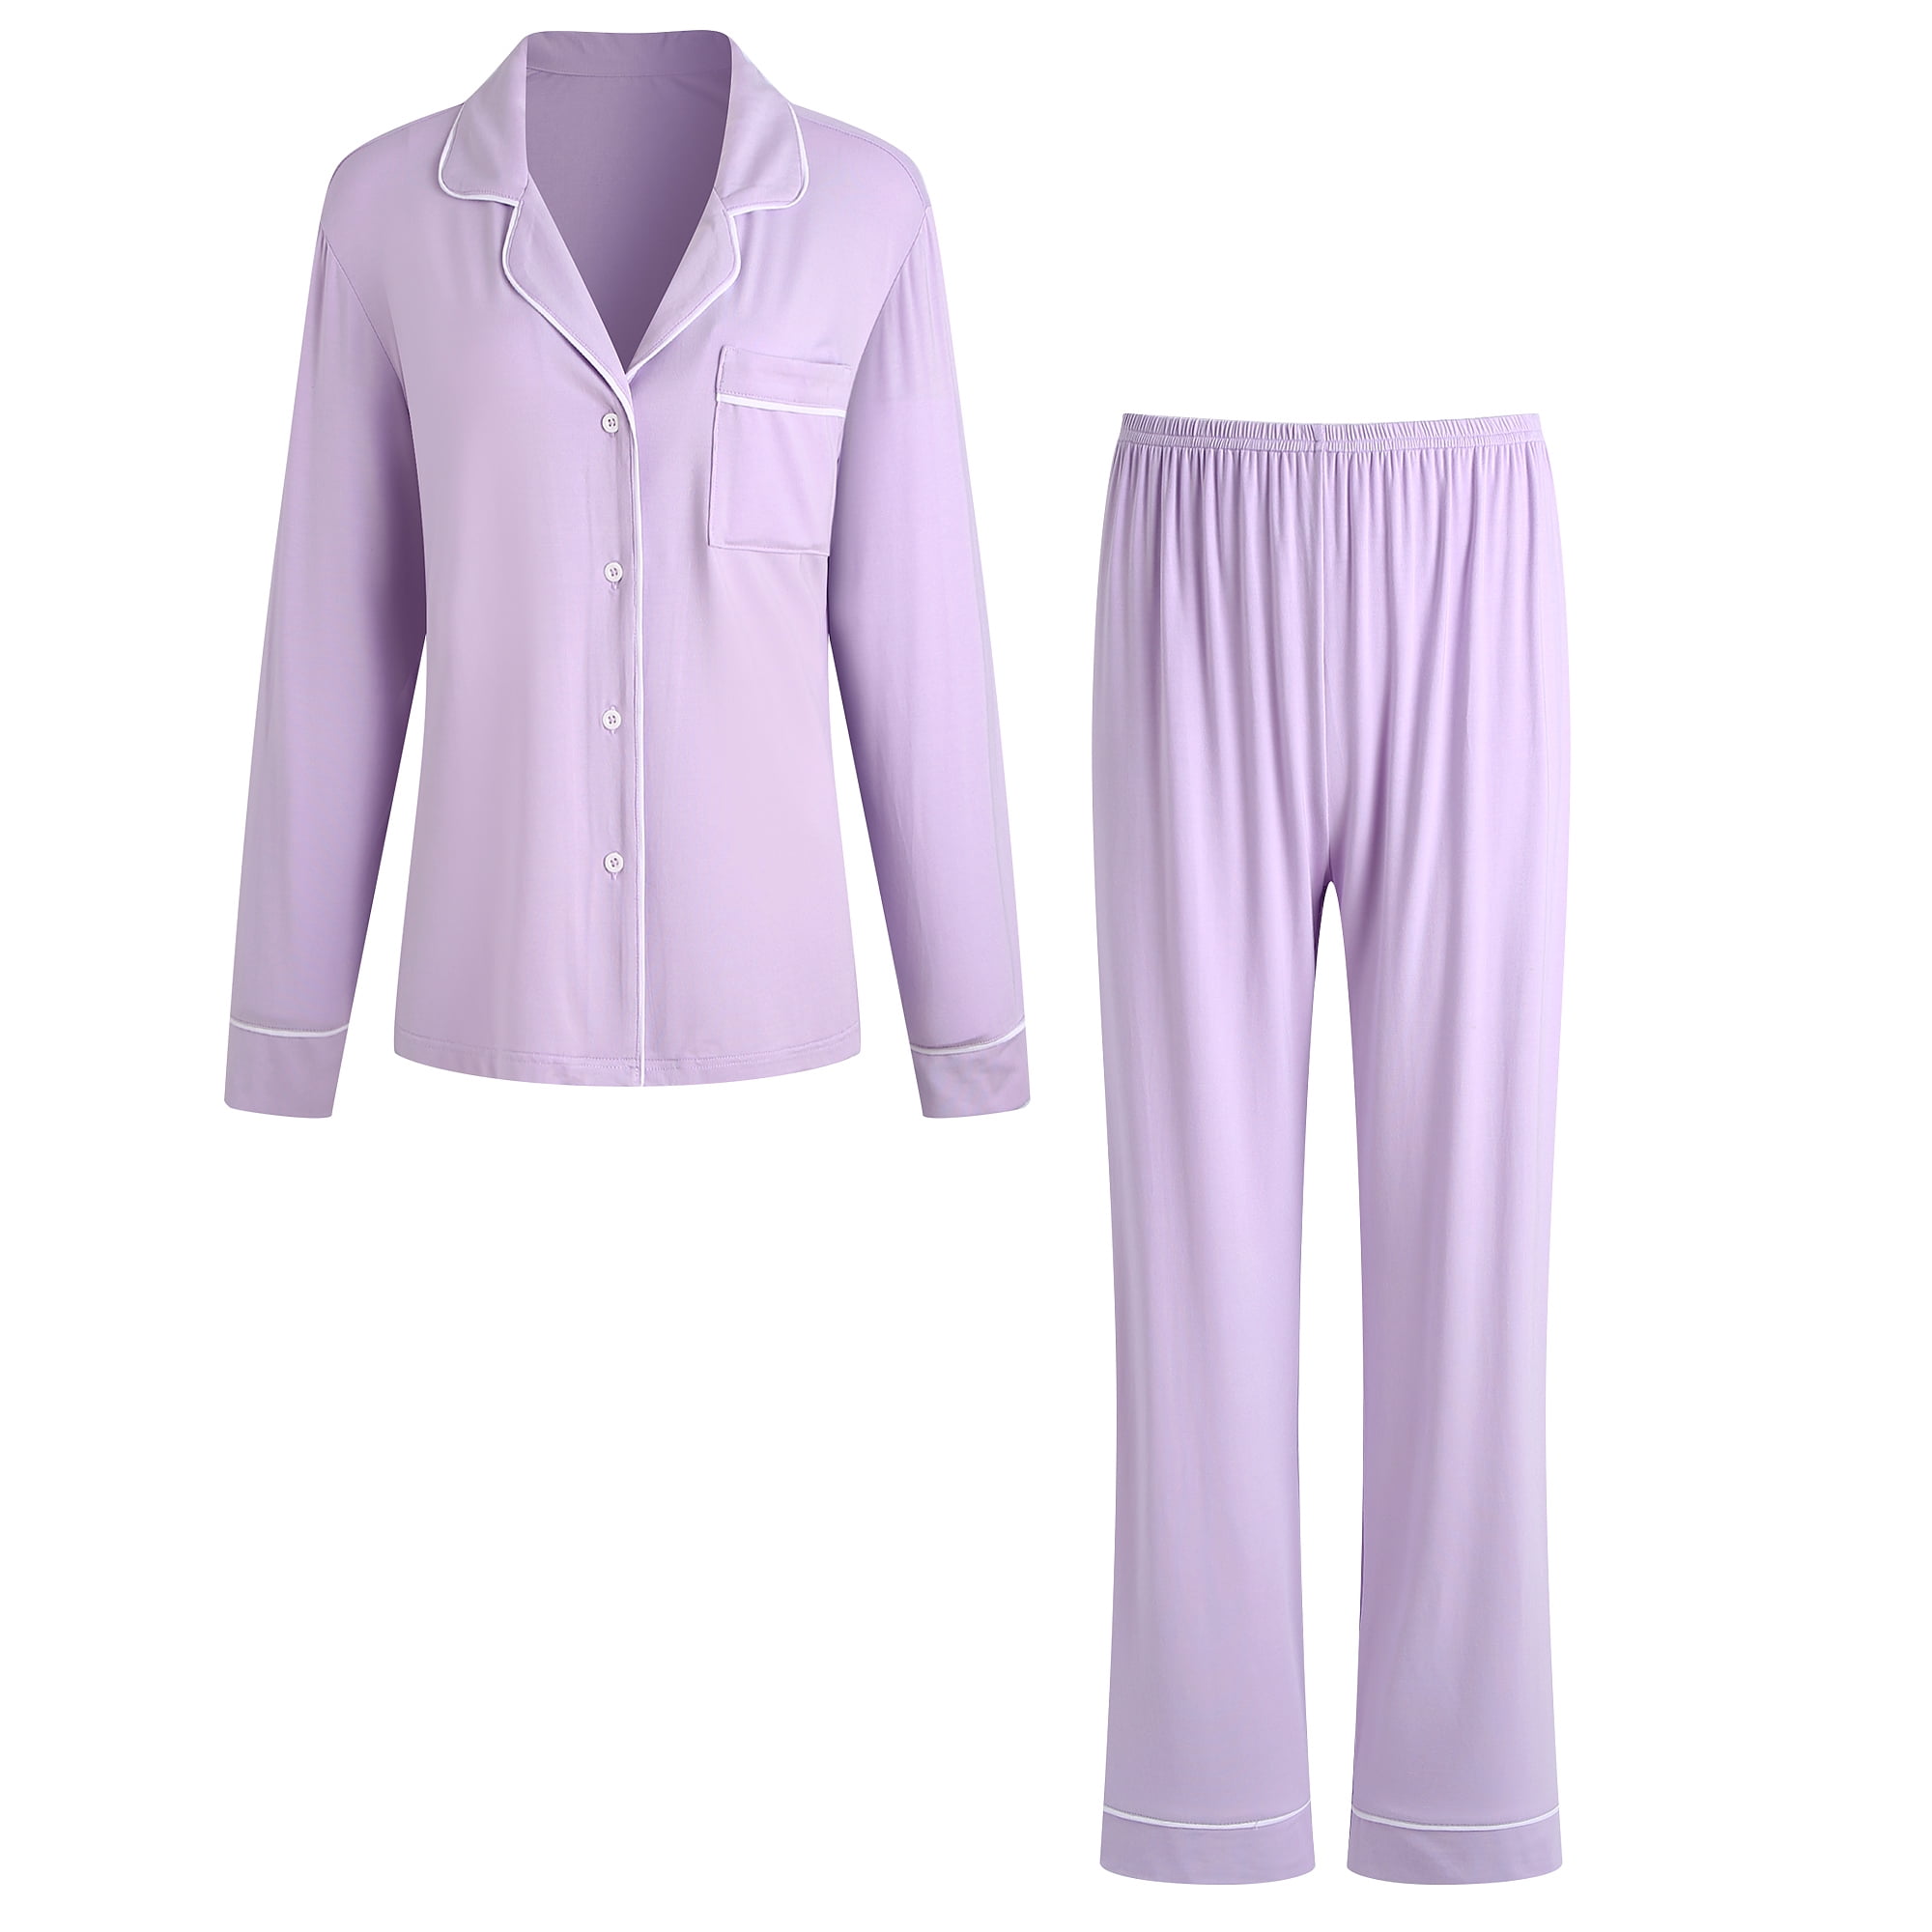 RH Women Pajamas Set Button Down Sleepwear Long Sleeve Nightwear Long ...